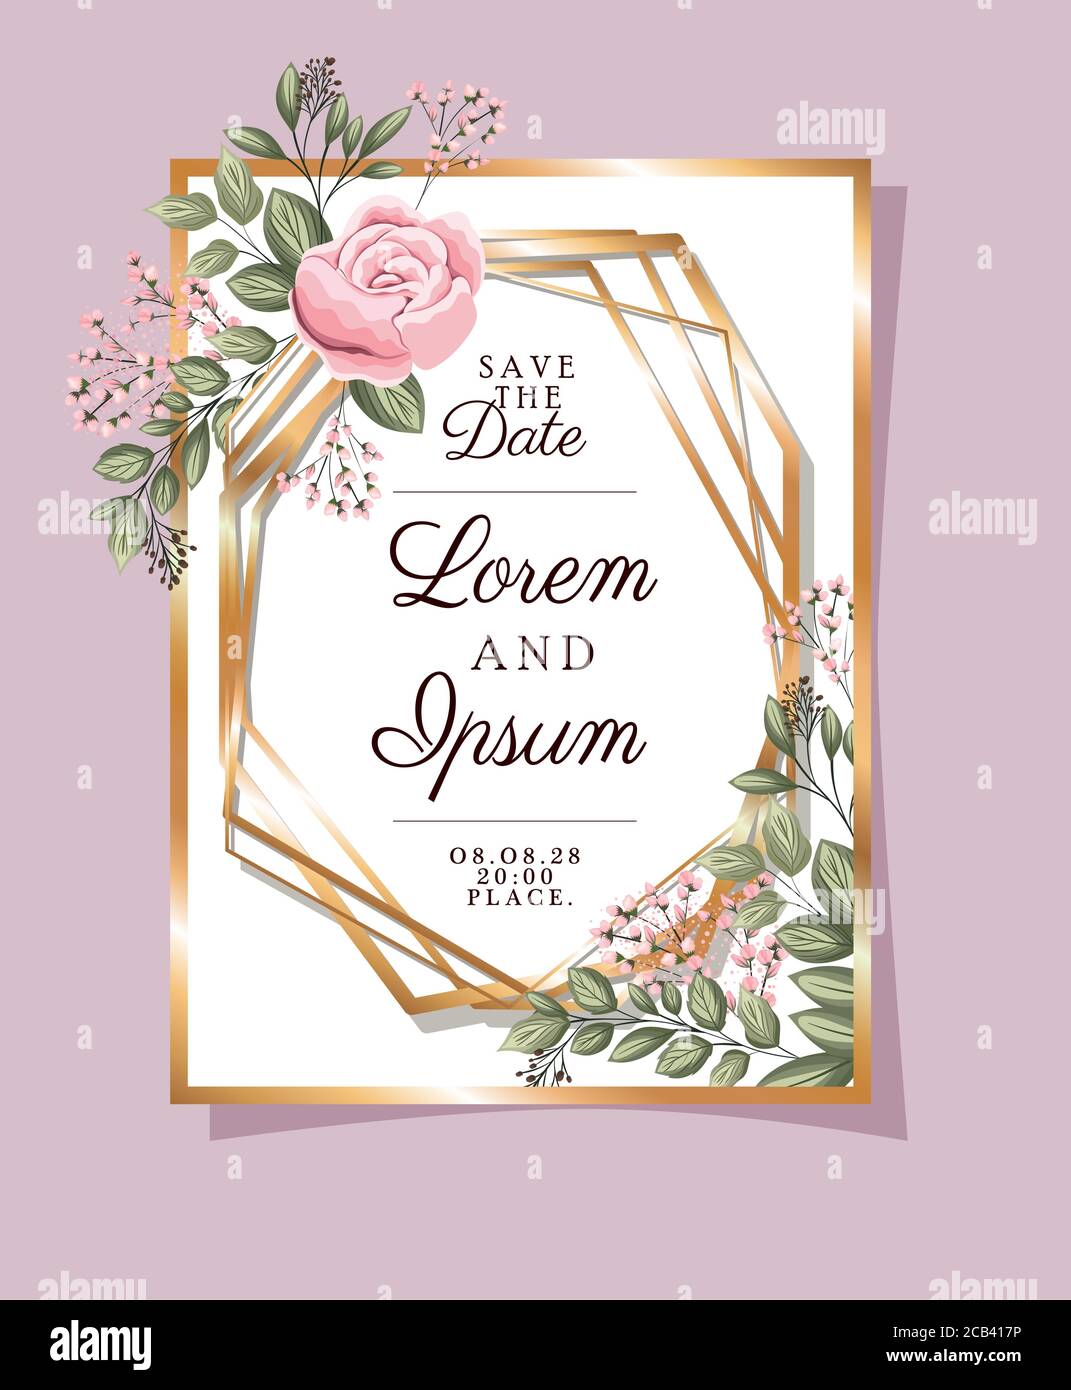 Enregistrez le texte de la date dans un cadre doré avec motif fleurs et  feuilles roses, invitation de mariage et illustration vectorielle du thème  d'engagement Image Vectorielle Stock - Alamy